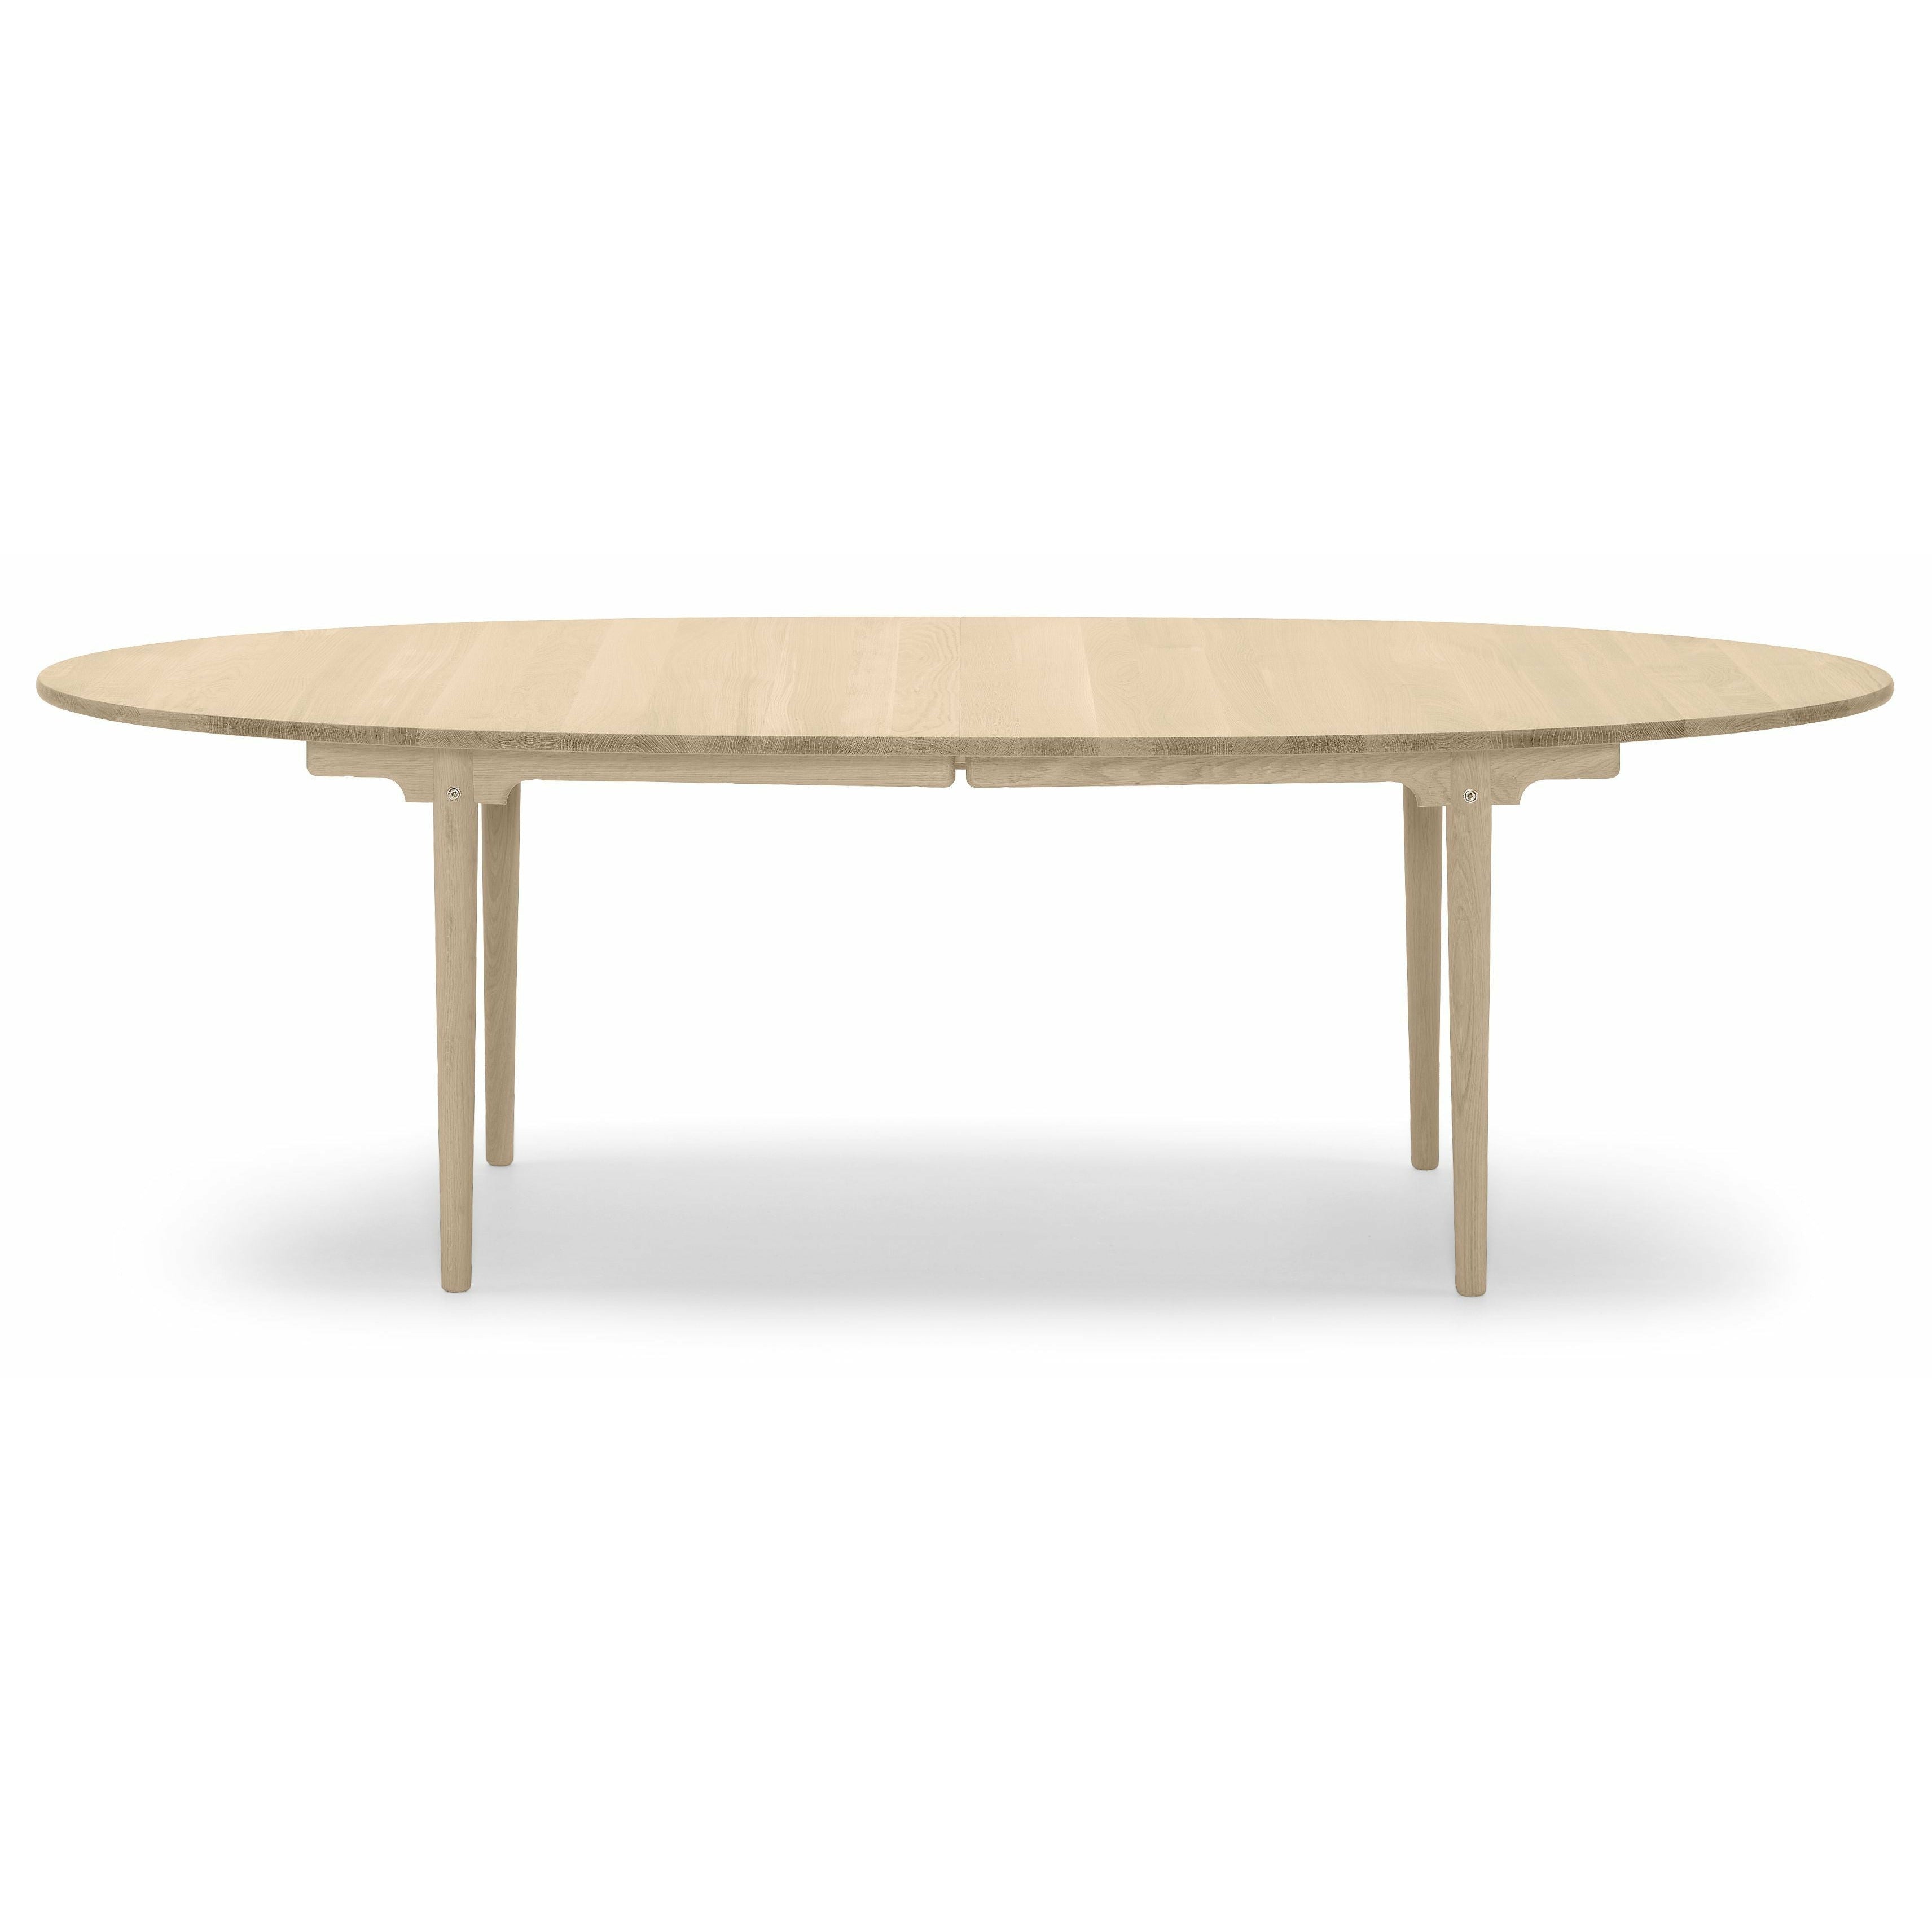 Carl Hansen CH339 matbord designat för 2 utdragbara plattor, ekoljad